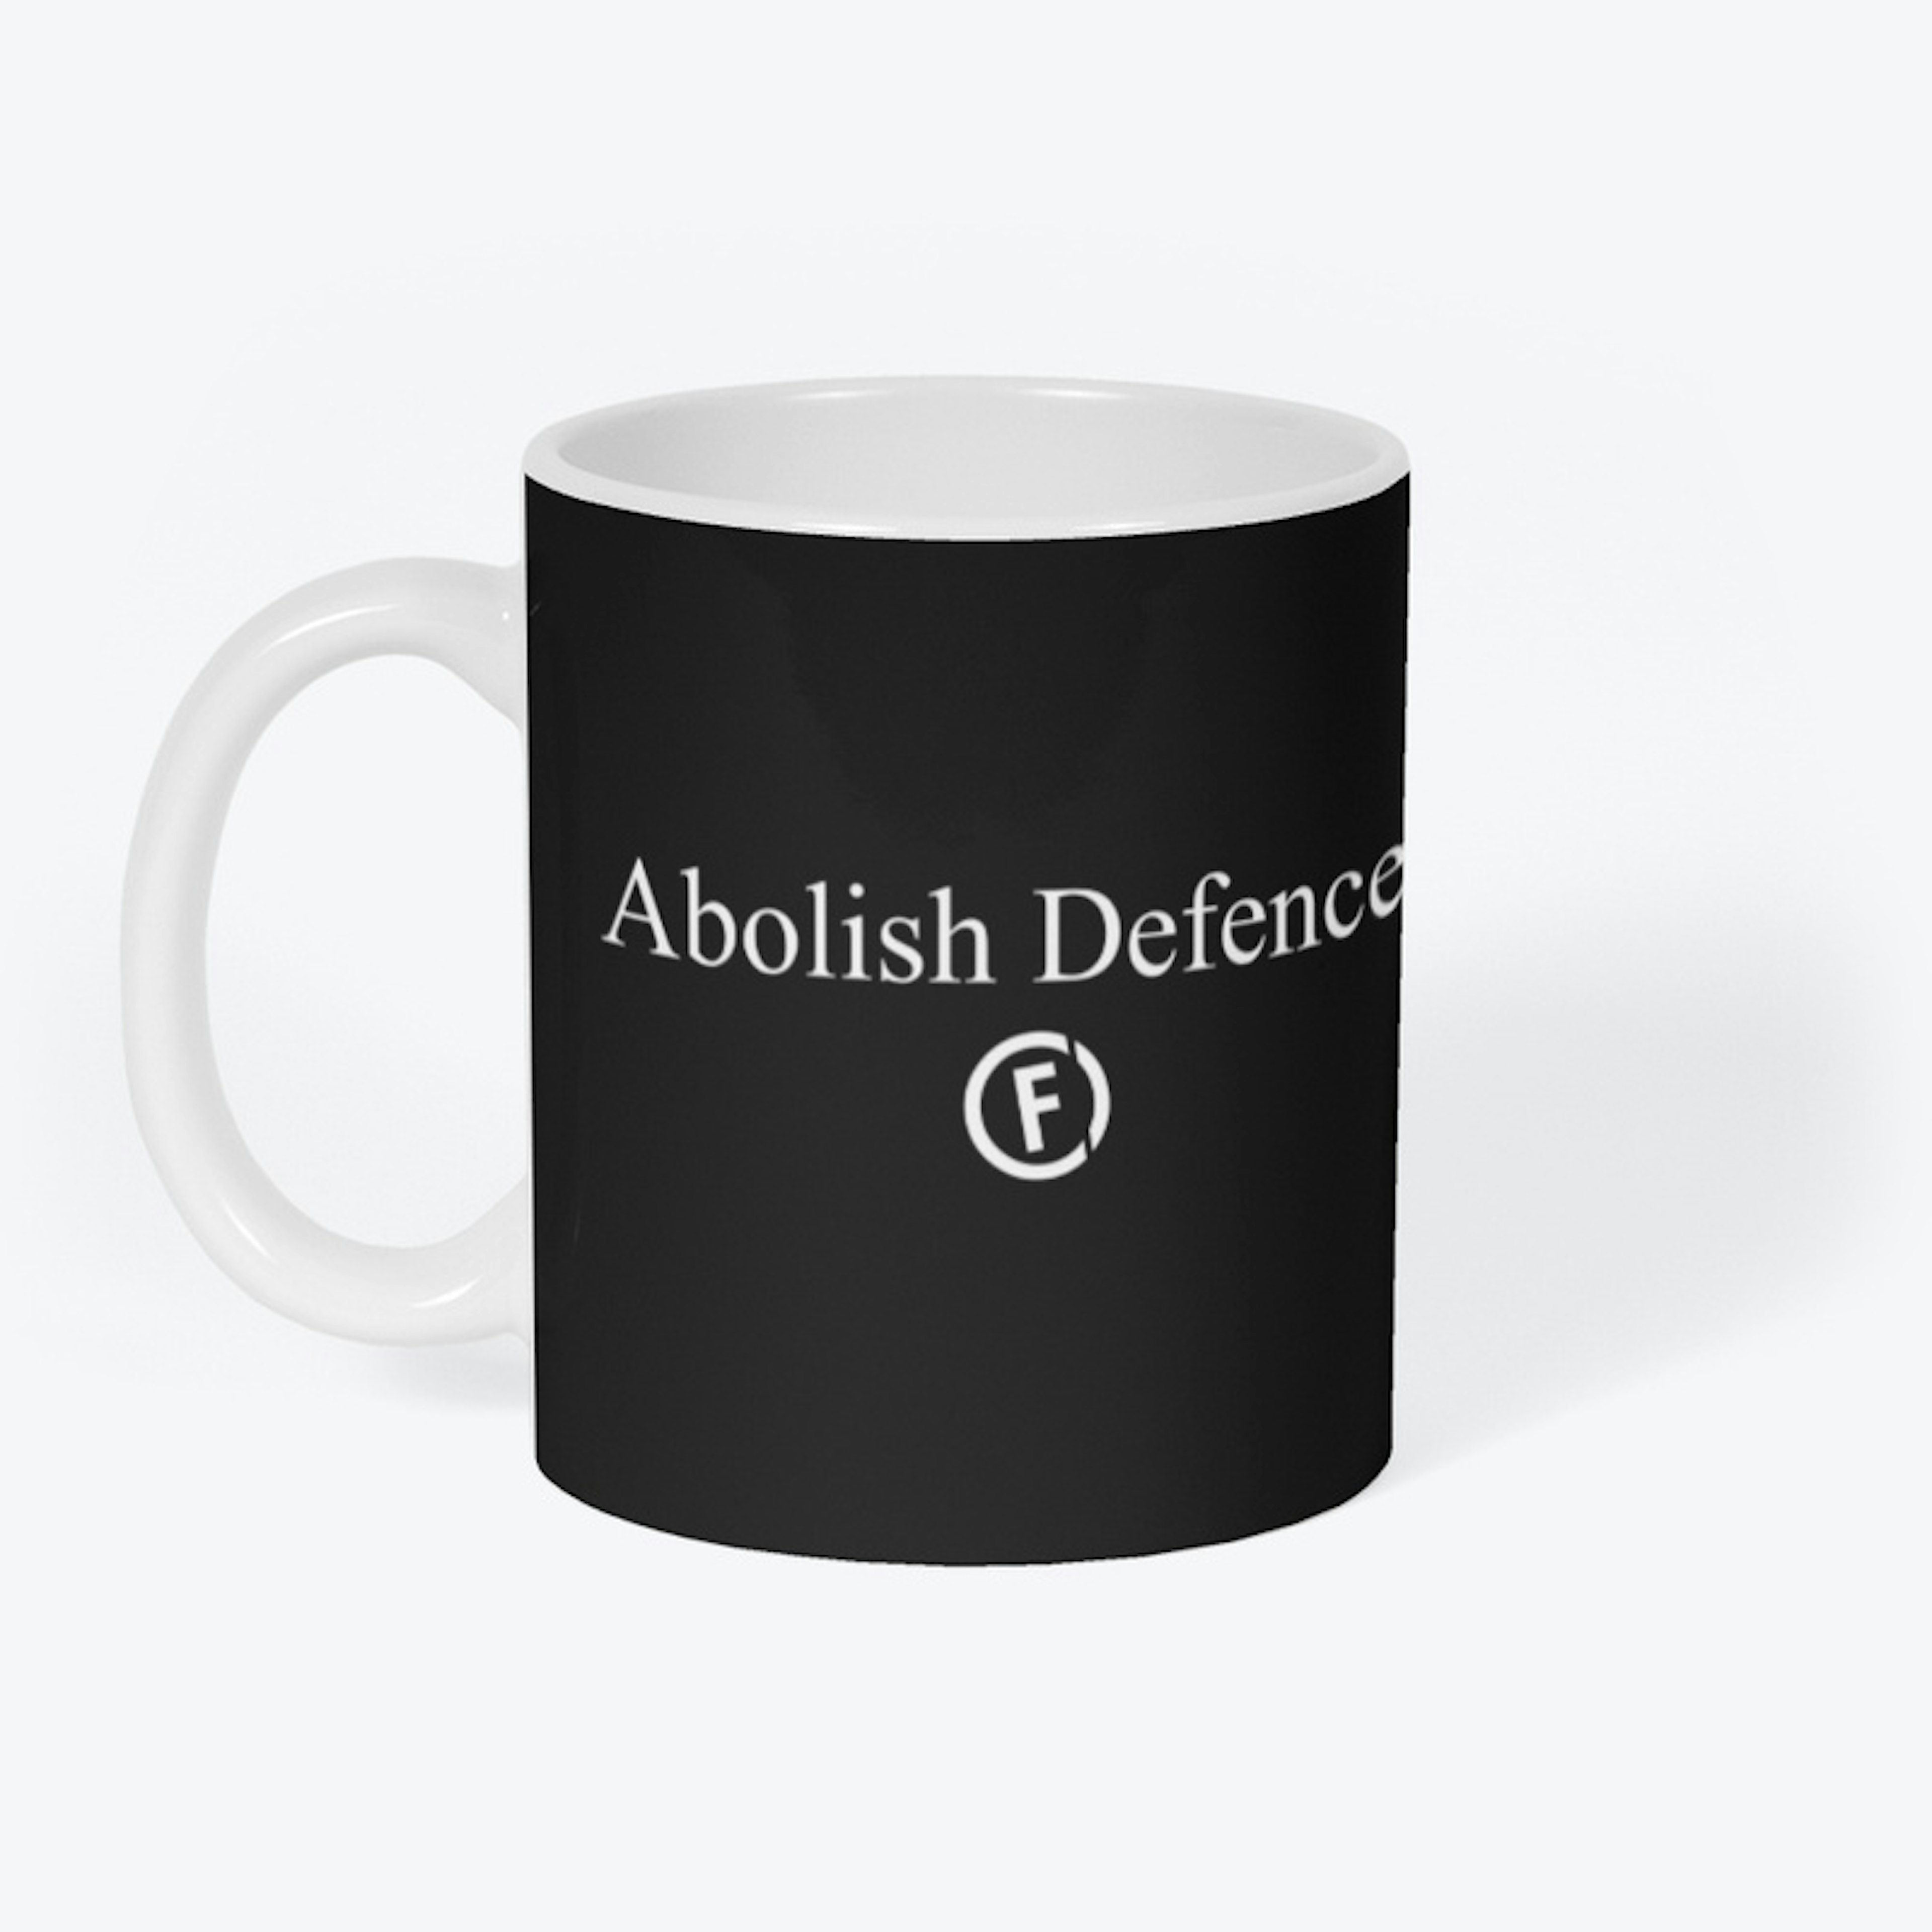 Abolish Defence